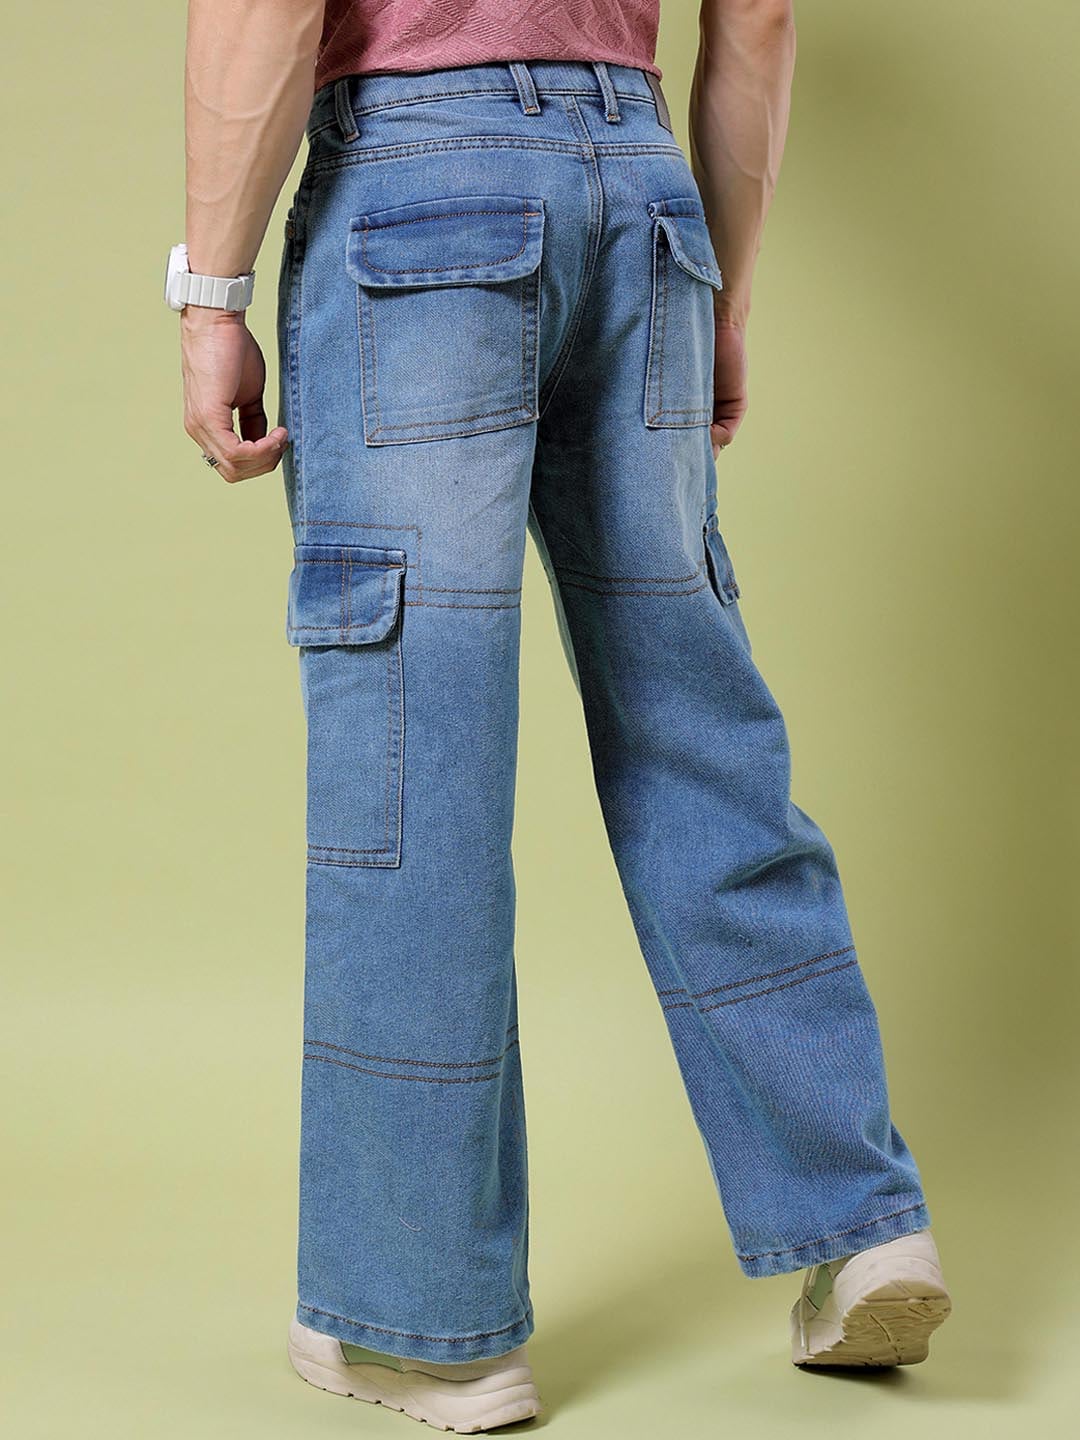 Shop Men Wide Leg Jeans Online.